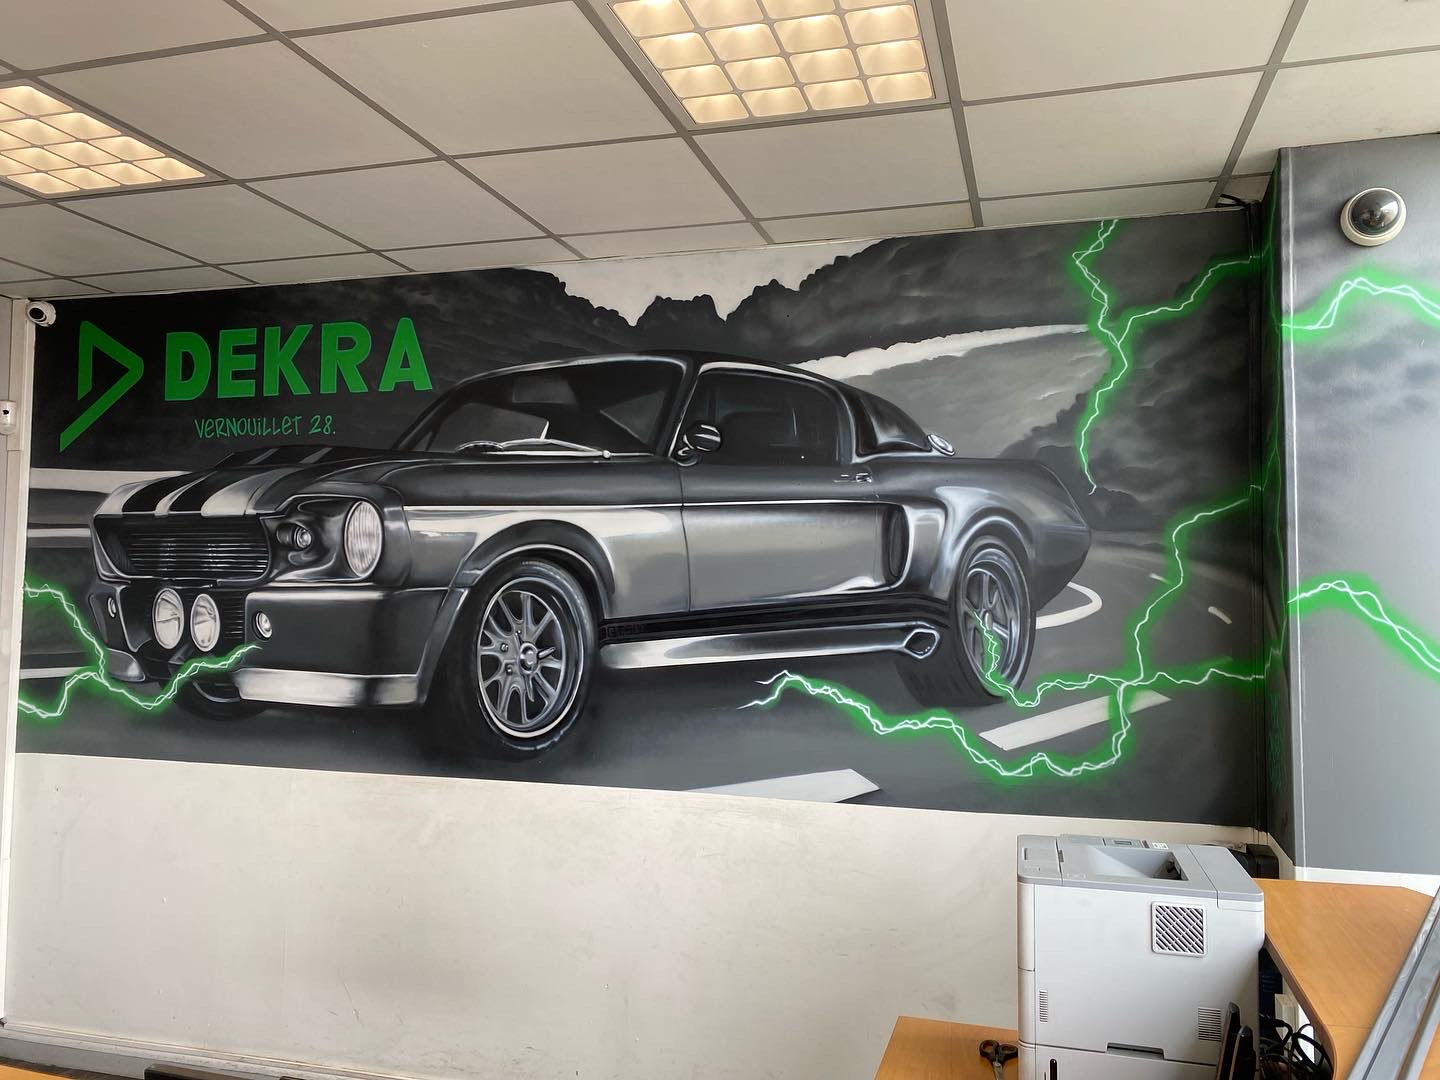 Fresque murale DEKRA contrôle technique